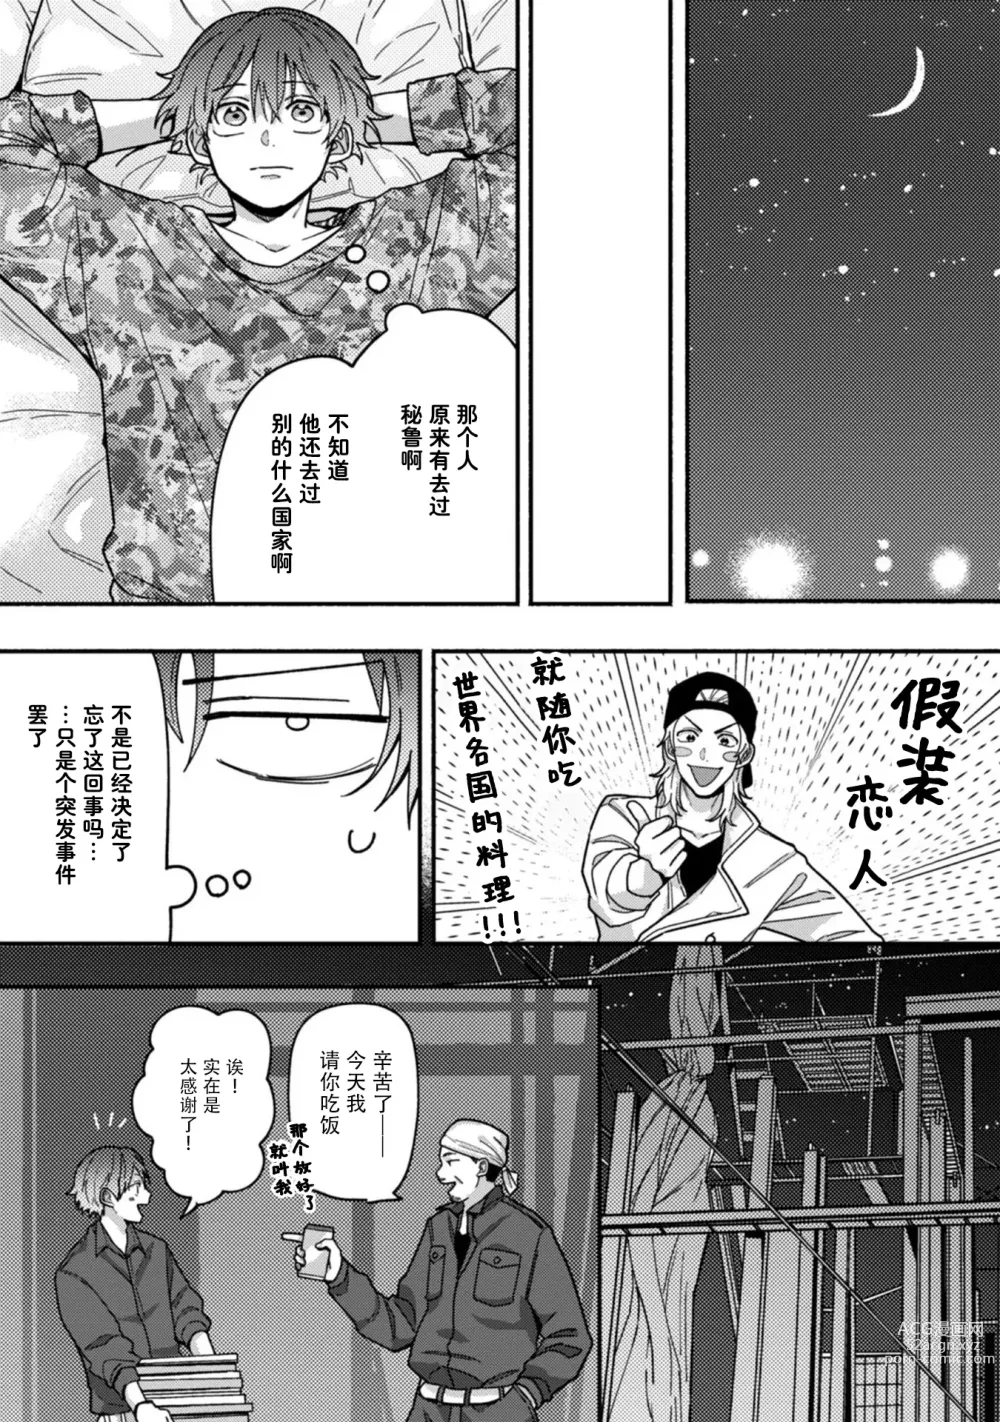 Page 24 of manga 谎言与黄色小刀